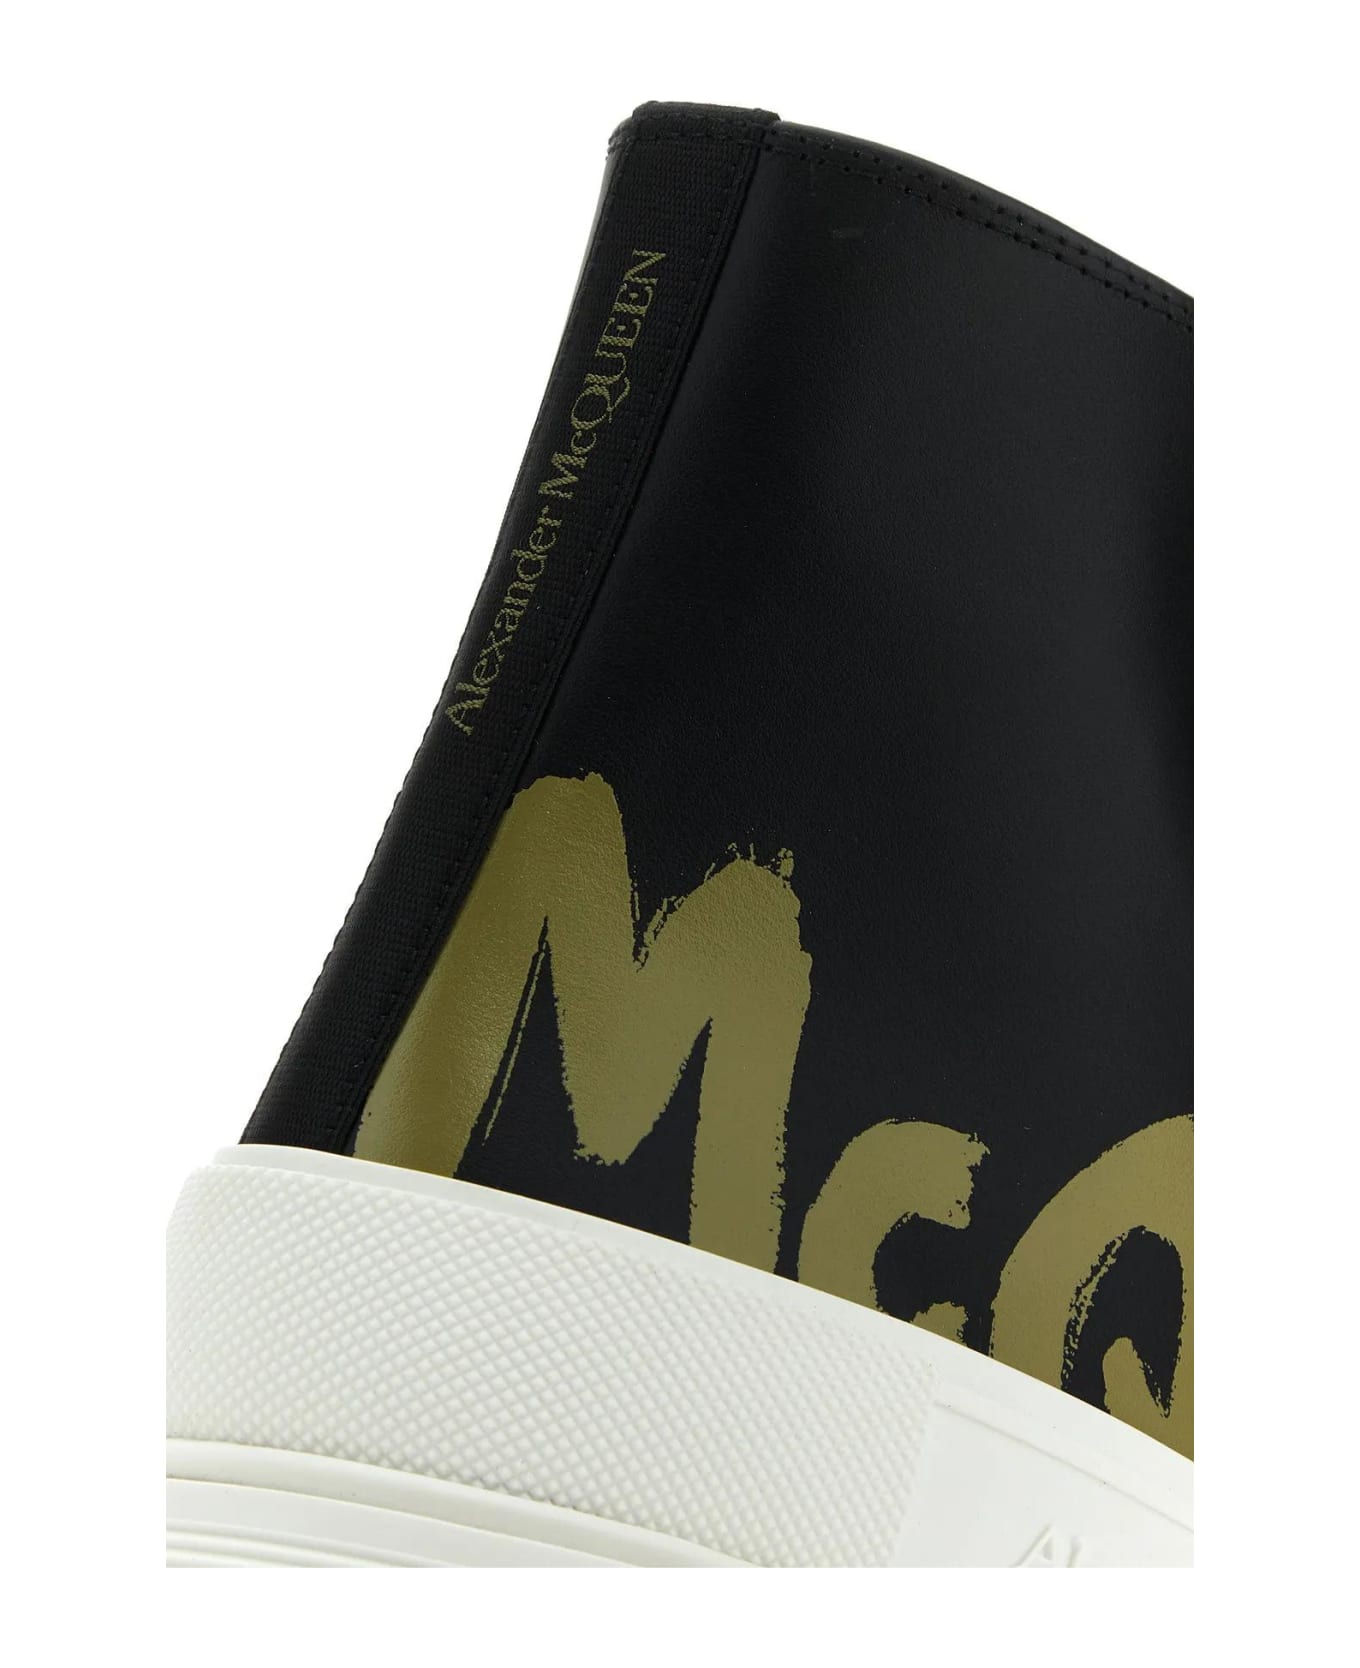 Alexander McQueen Black Leather Tread Slick Sneakers - Black